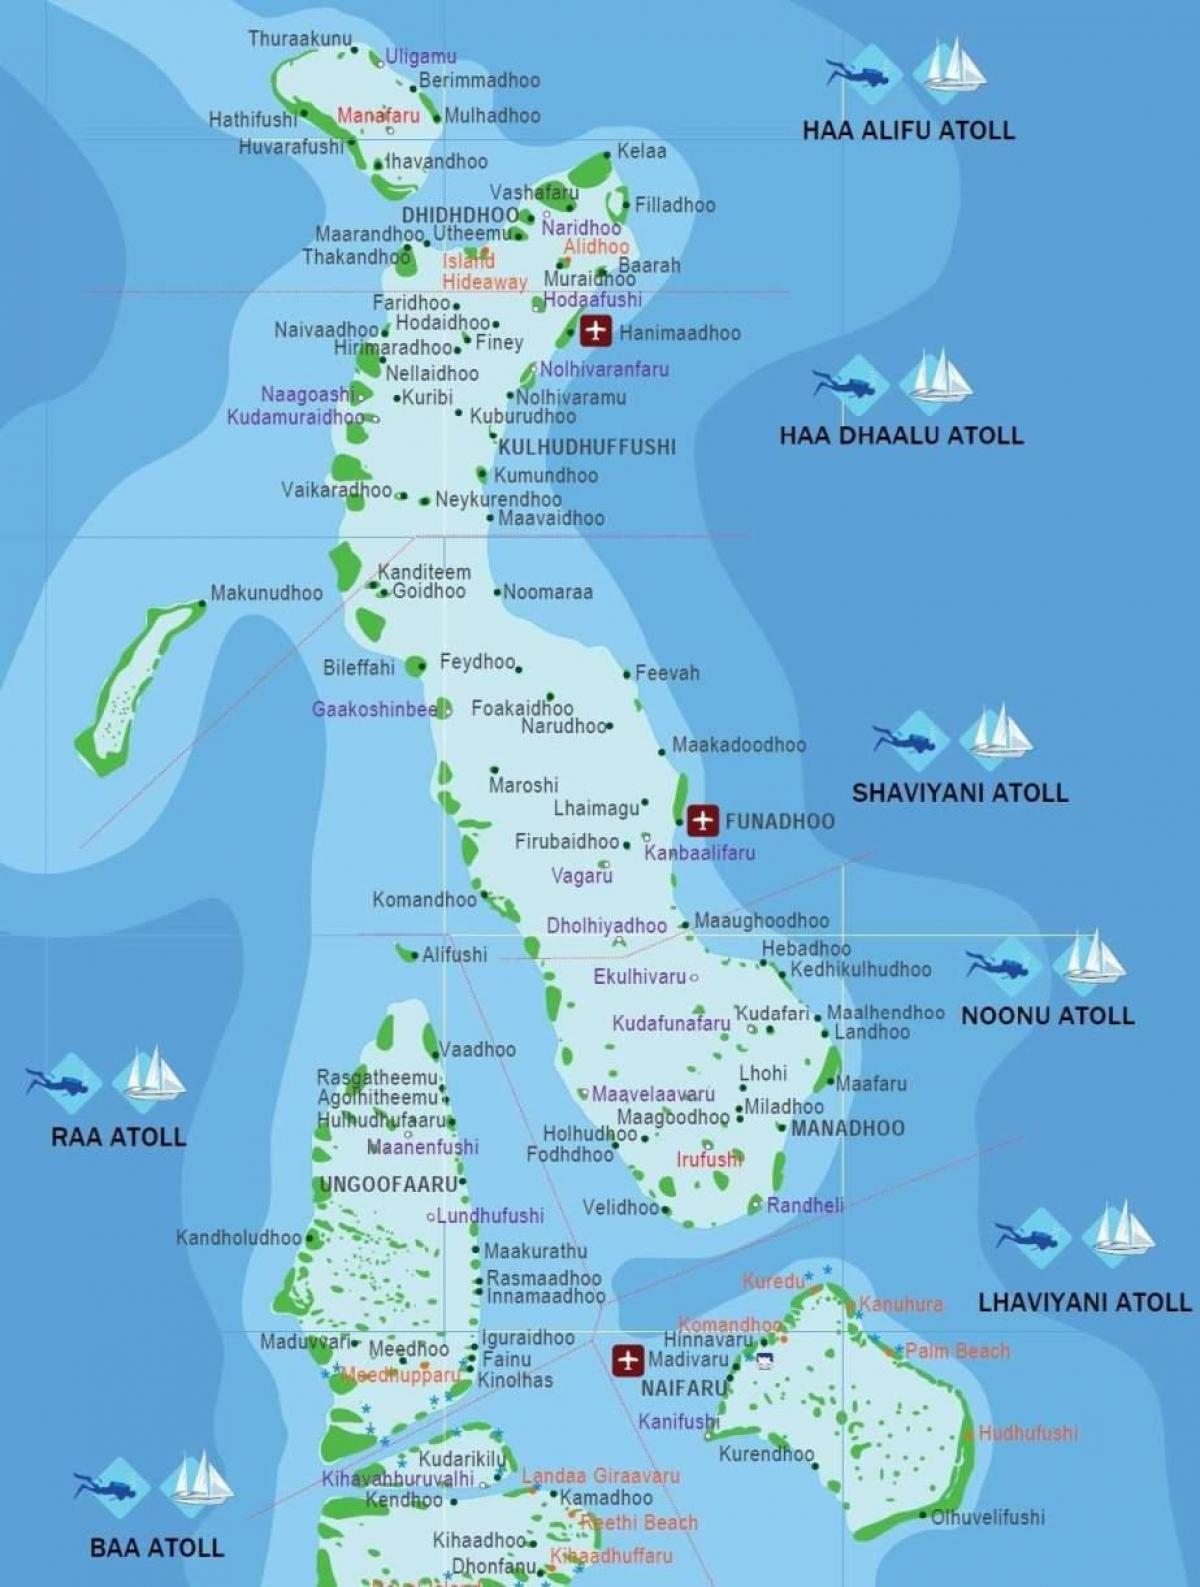 מפה מלאה של האיים המלדיביים